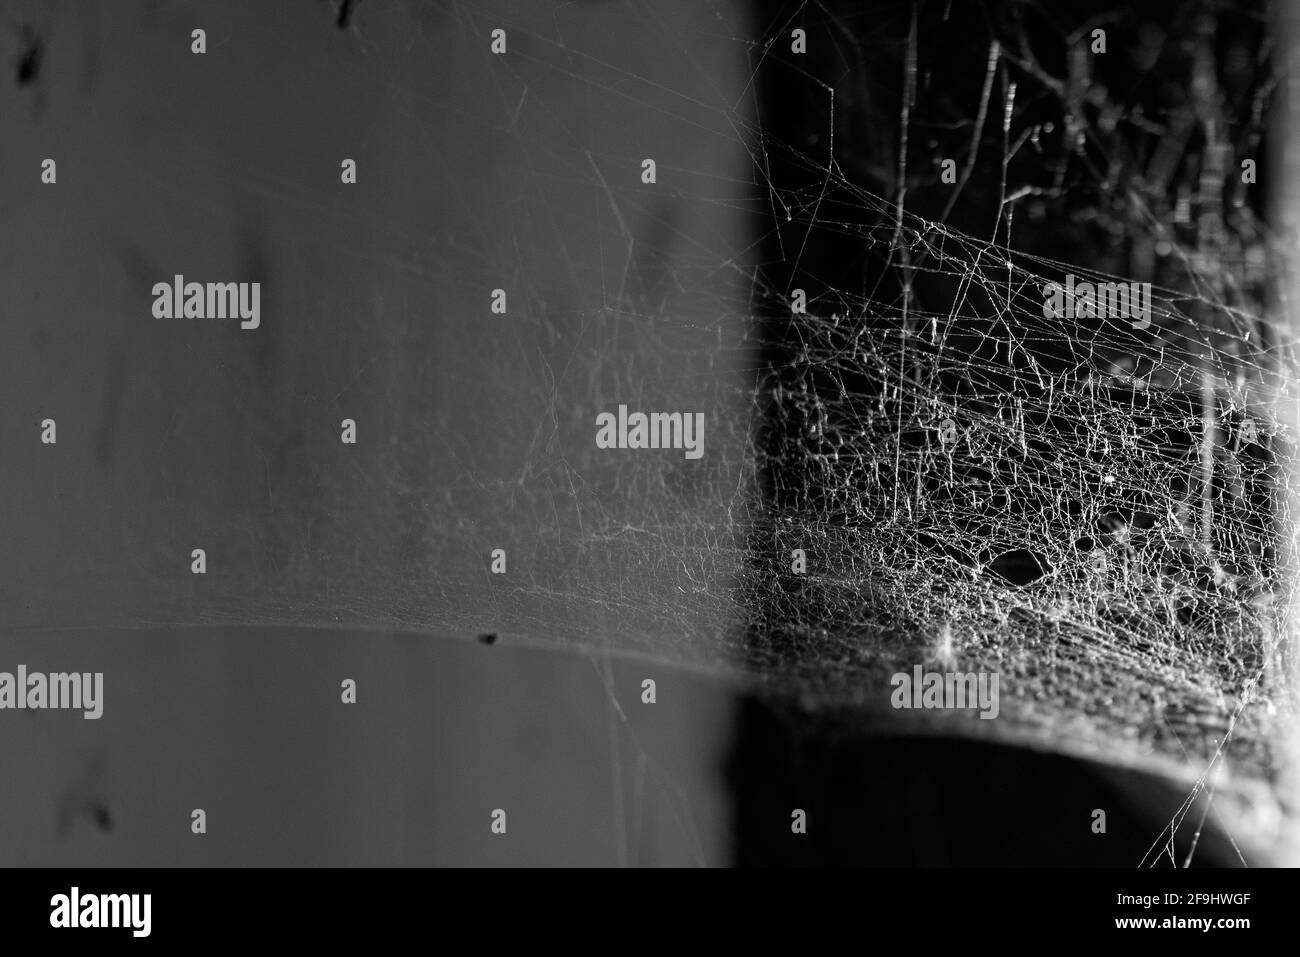 Natürliches Spinnennetz in einer Ecke eines verlassenen Hauses, Zimmer mit schmutziger Wand und Fenster, schwarz-weiß-Bild Stockfoto